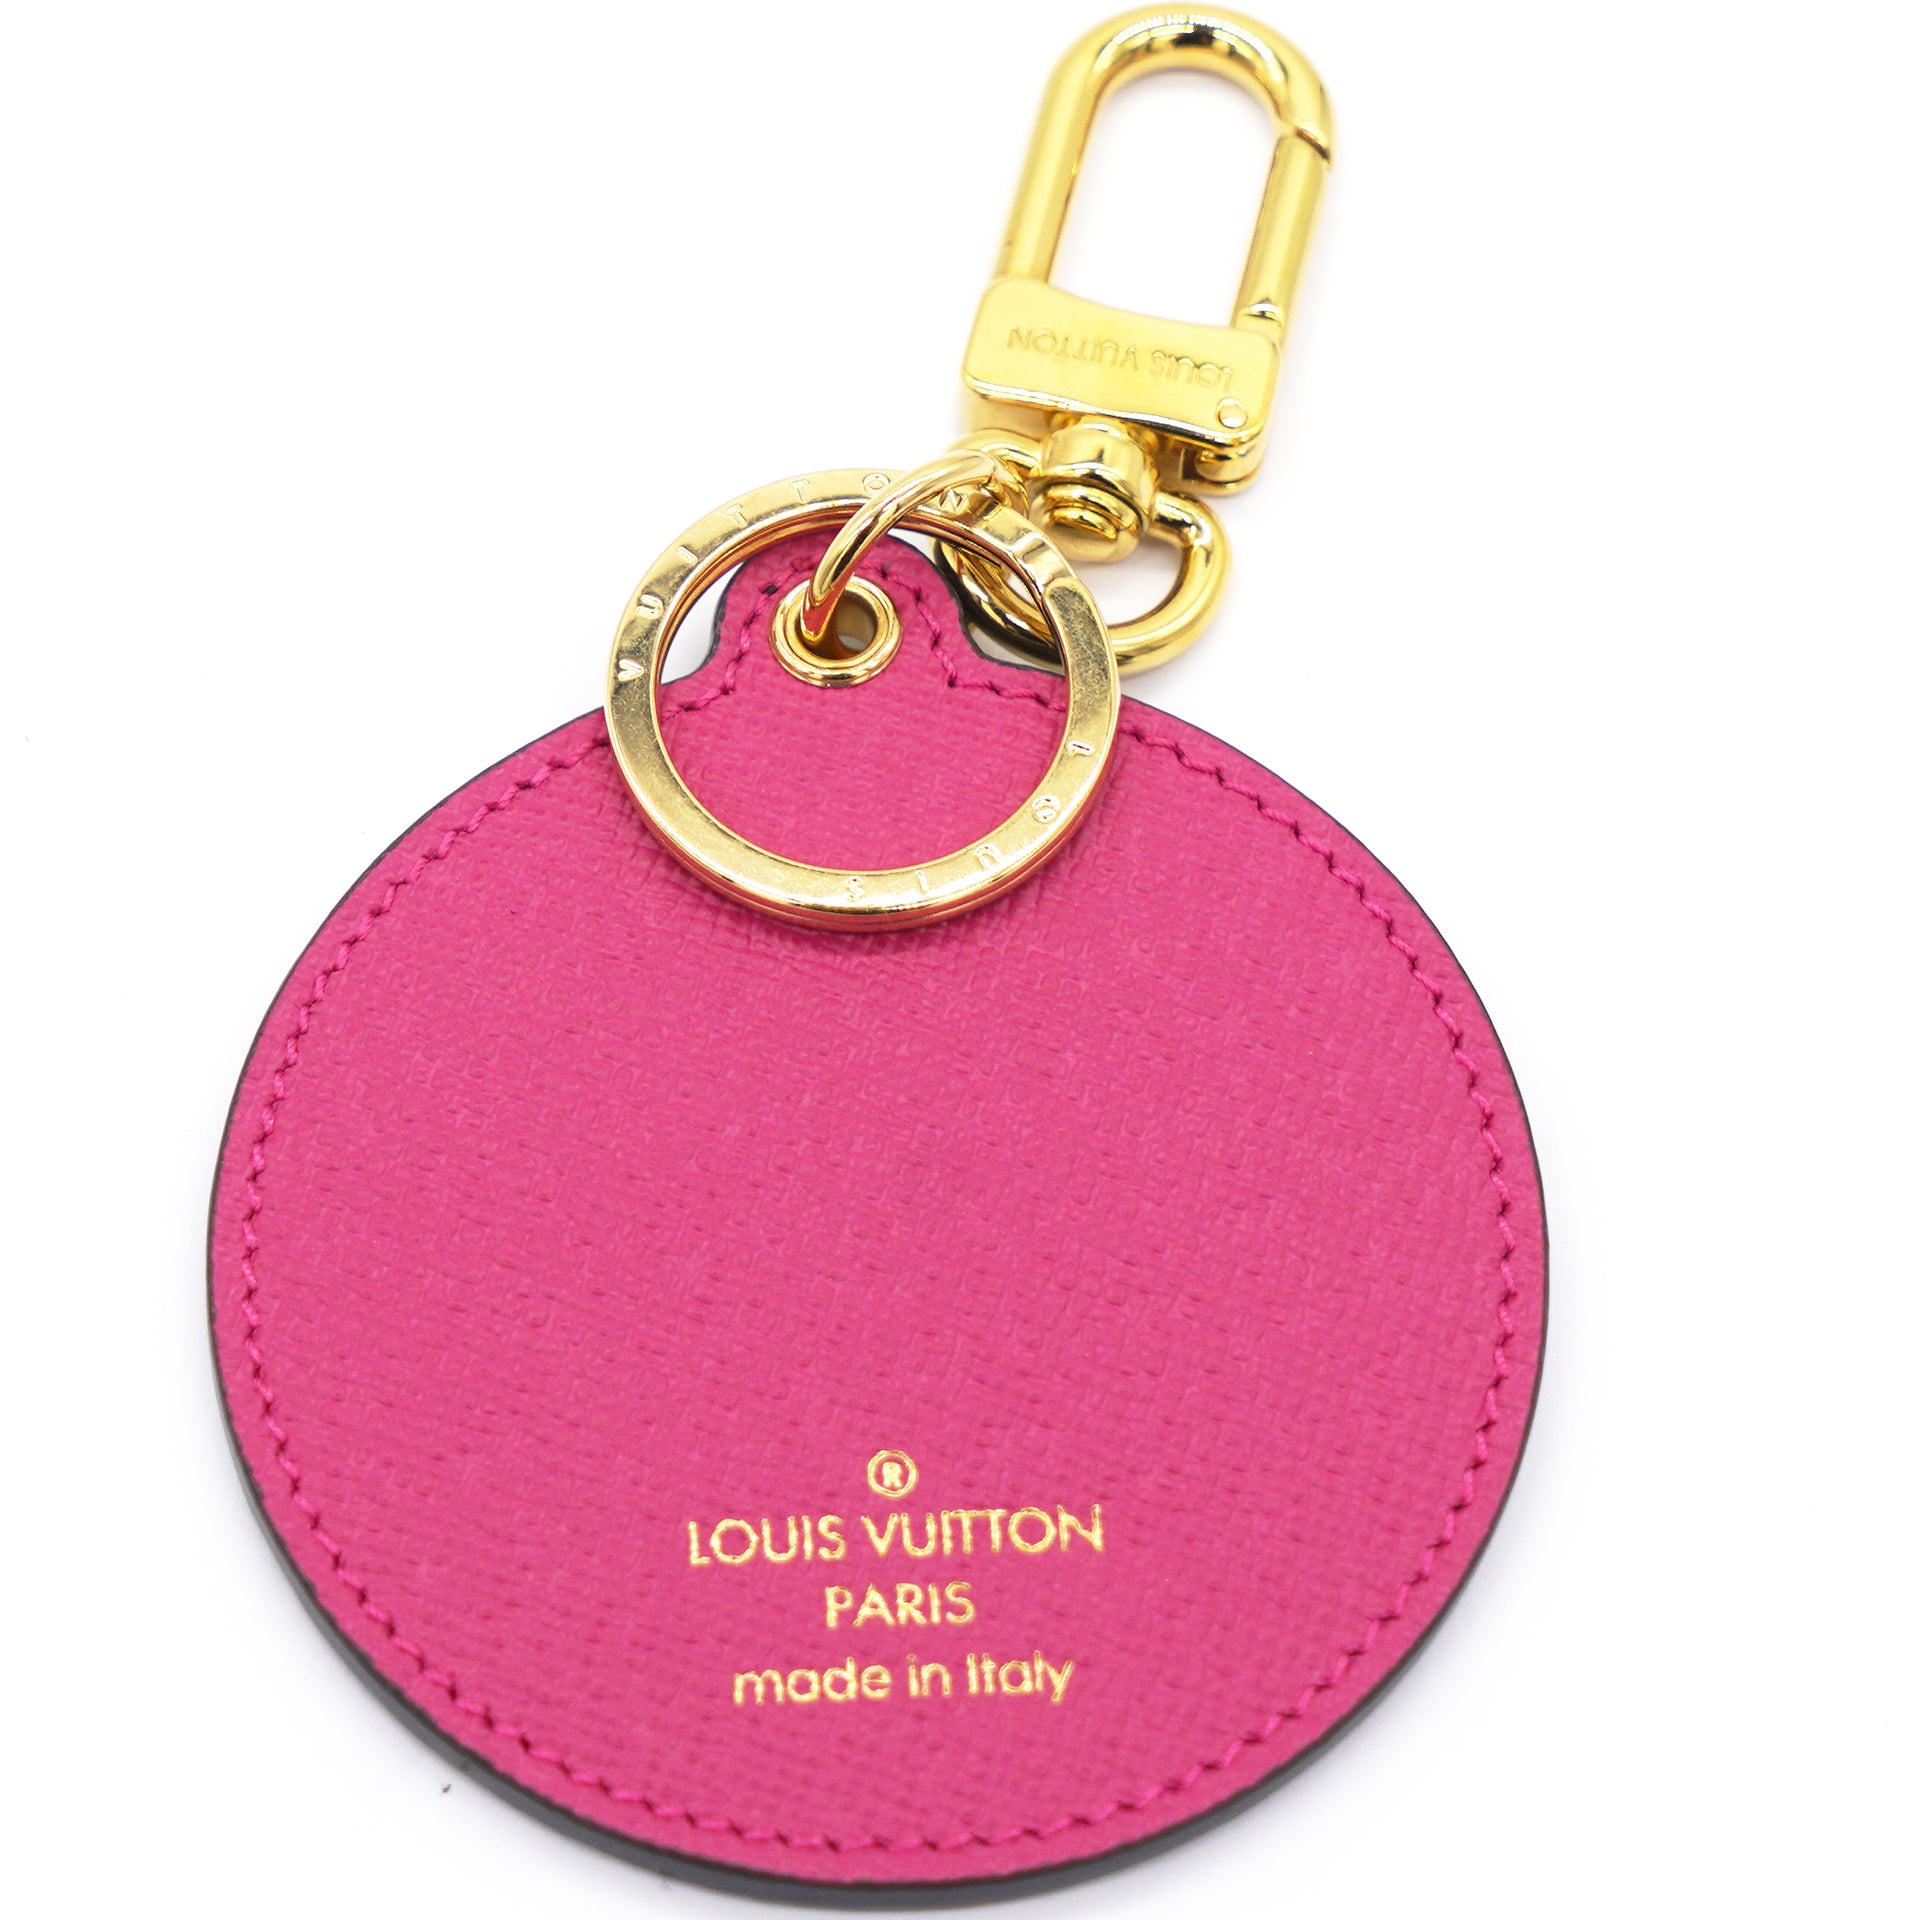 Louis Vuitton hot pink 4-key holder  Louis vuitton, Louis vuitton  accessories, Hot pink